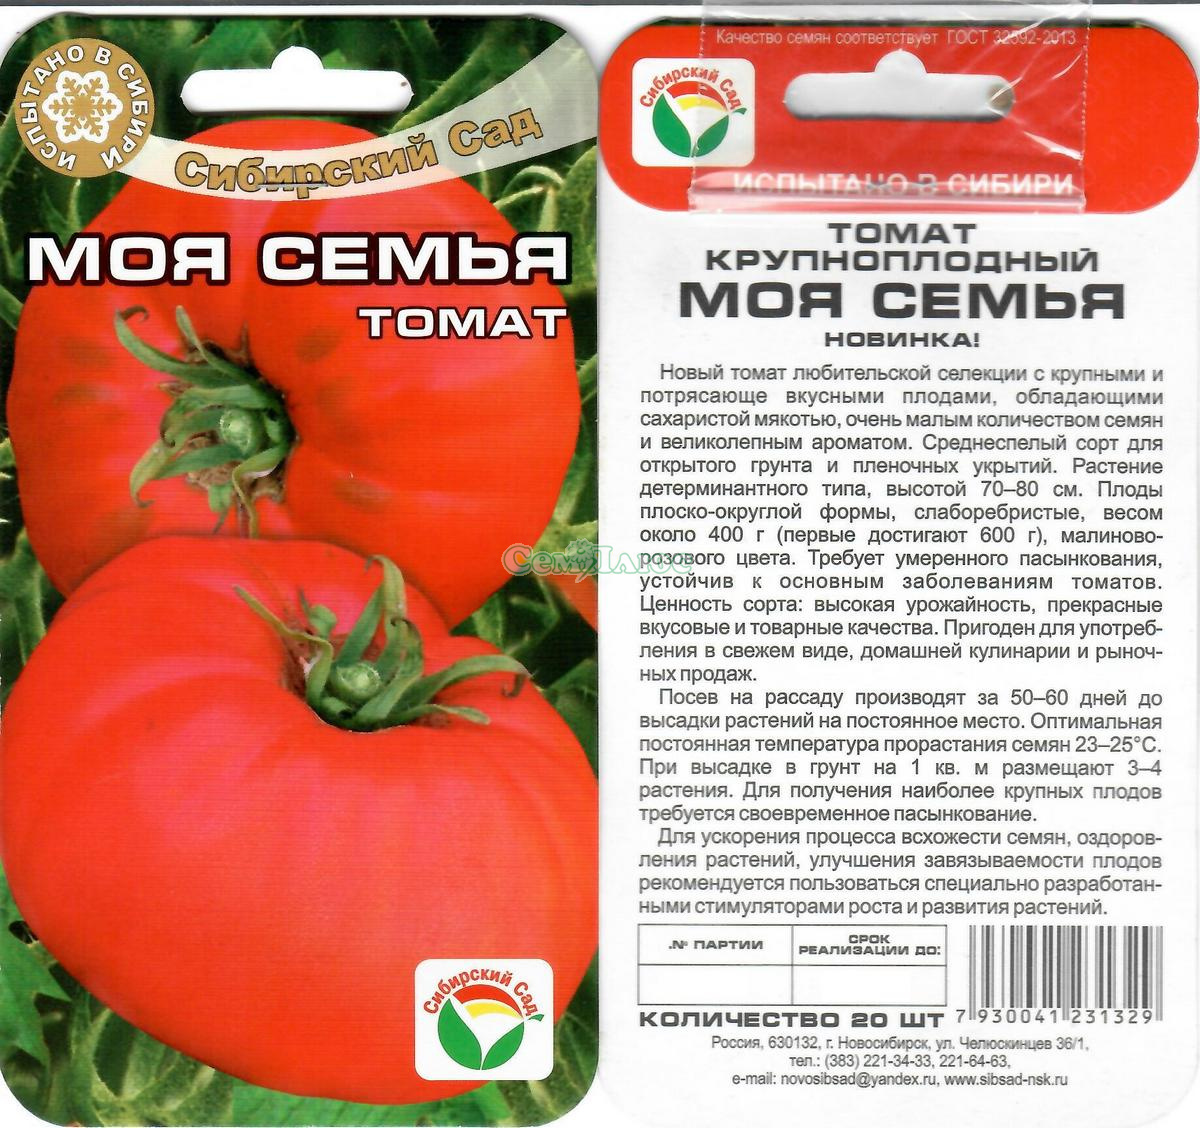 Томат любимый праздник: характеристика и описание сорта с фото, урожайность помидора, отзывы тех, кто сажал